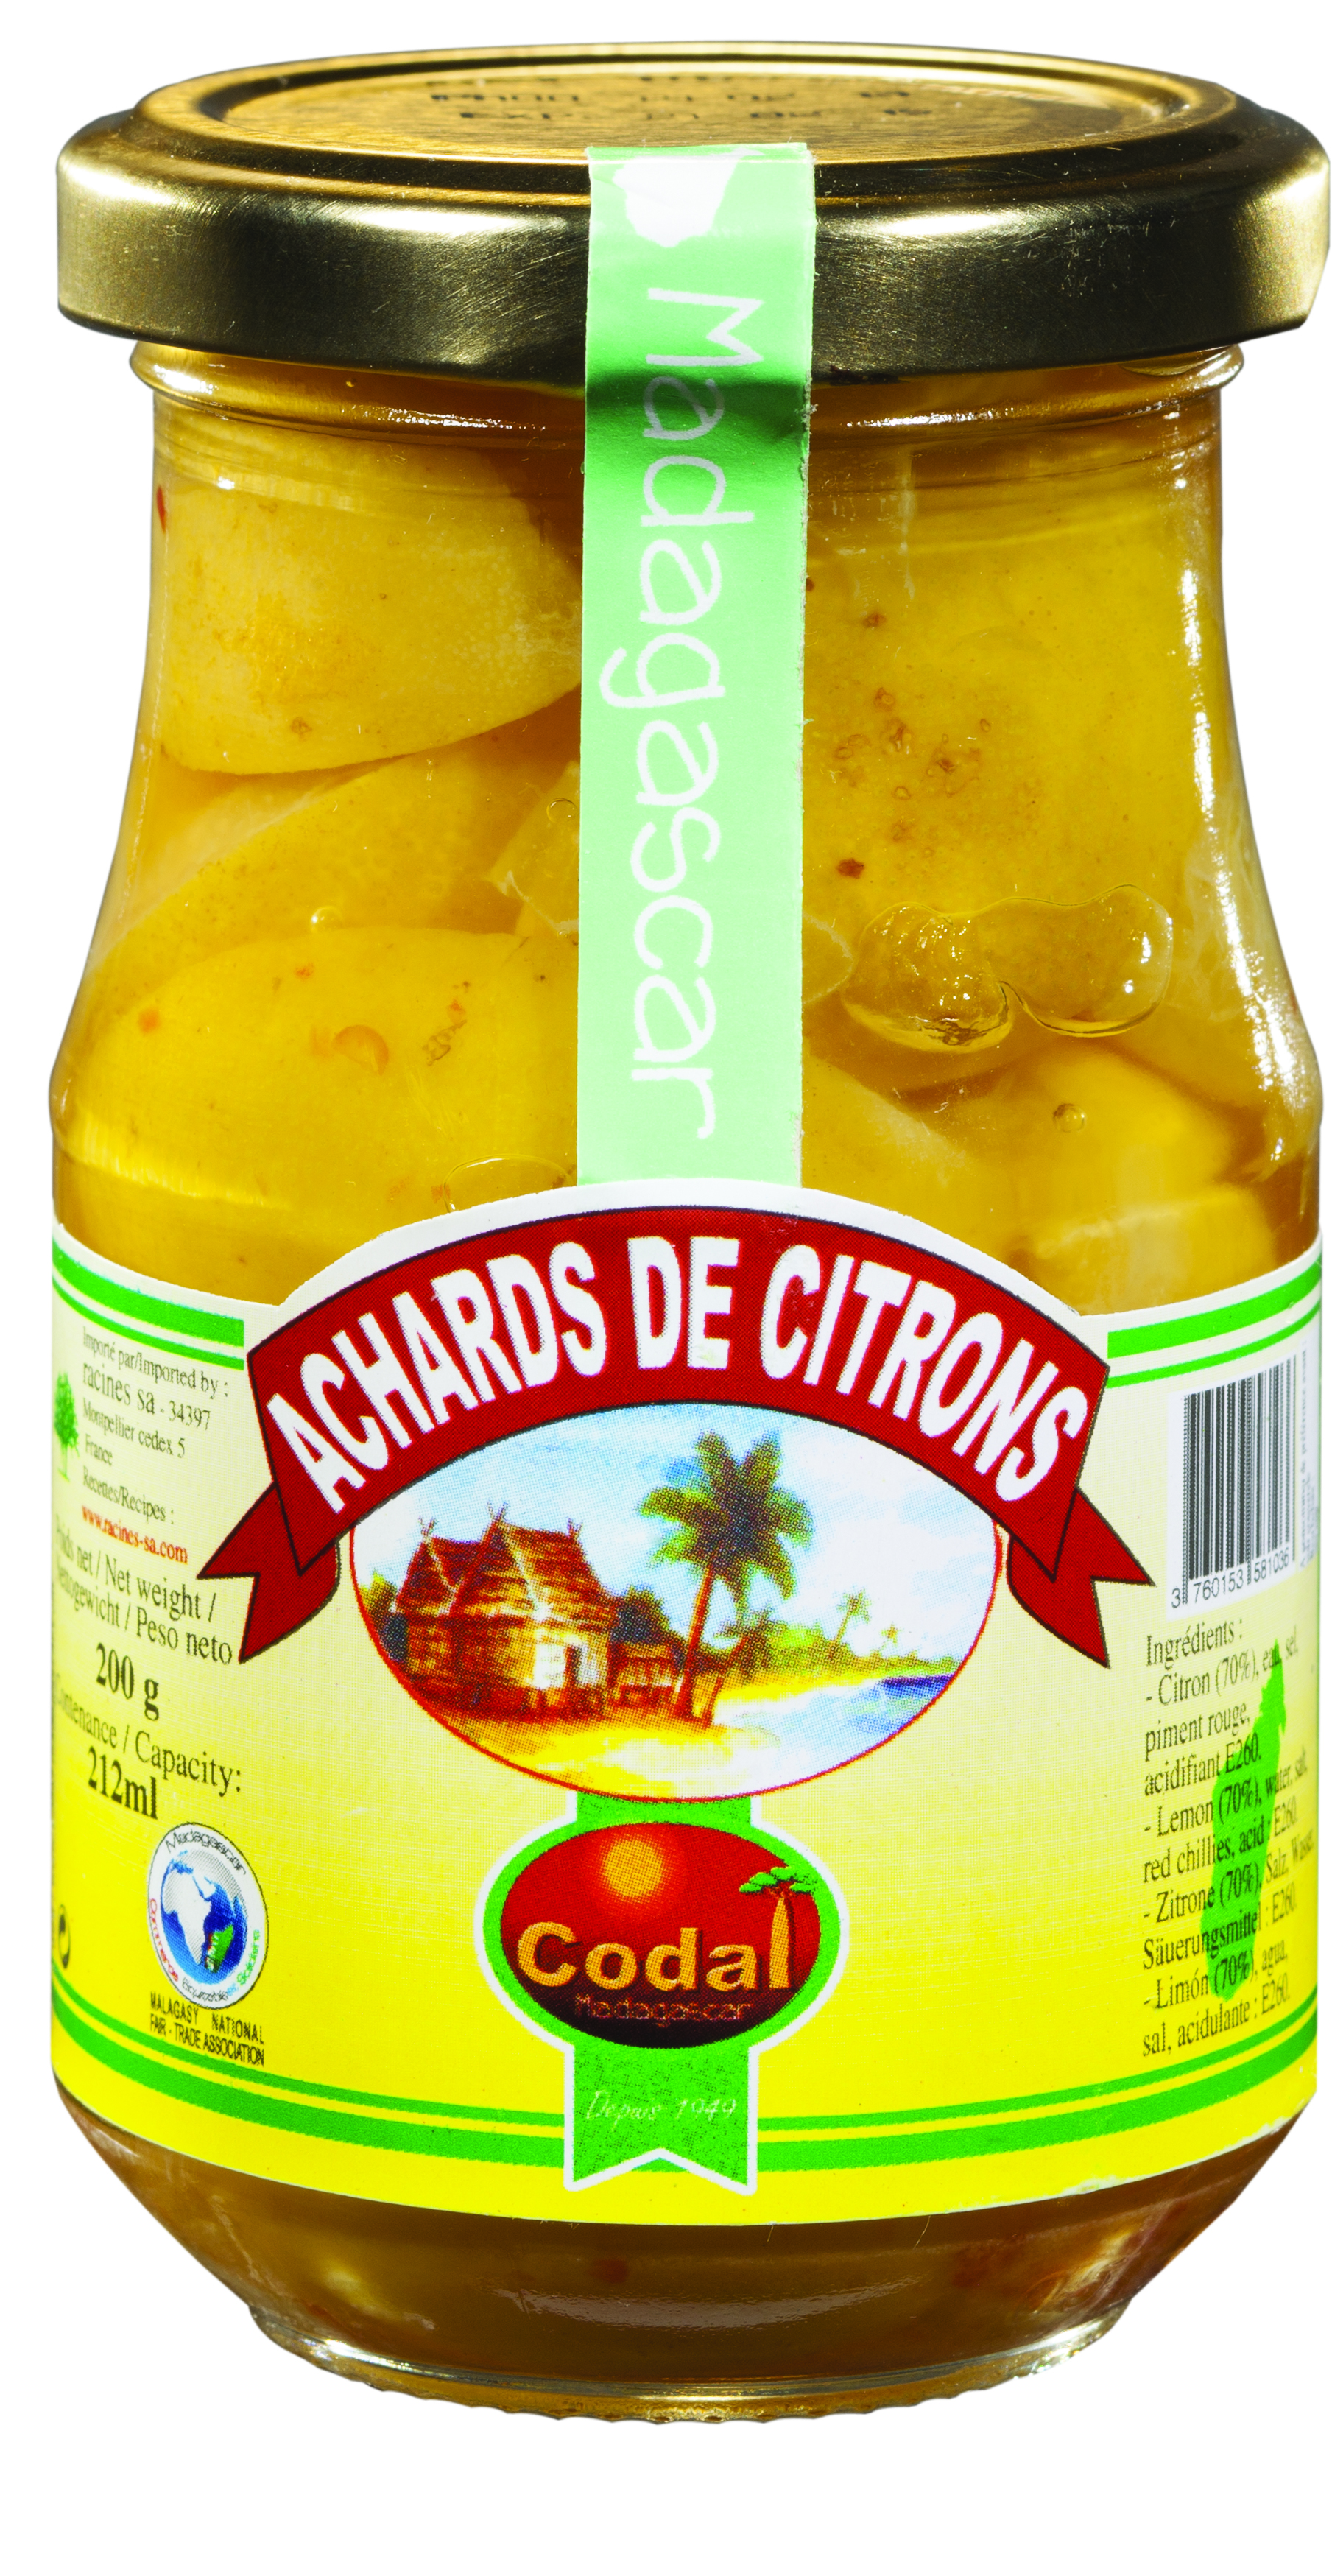 Achards De Citrons (12 X 200 G) - Codal